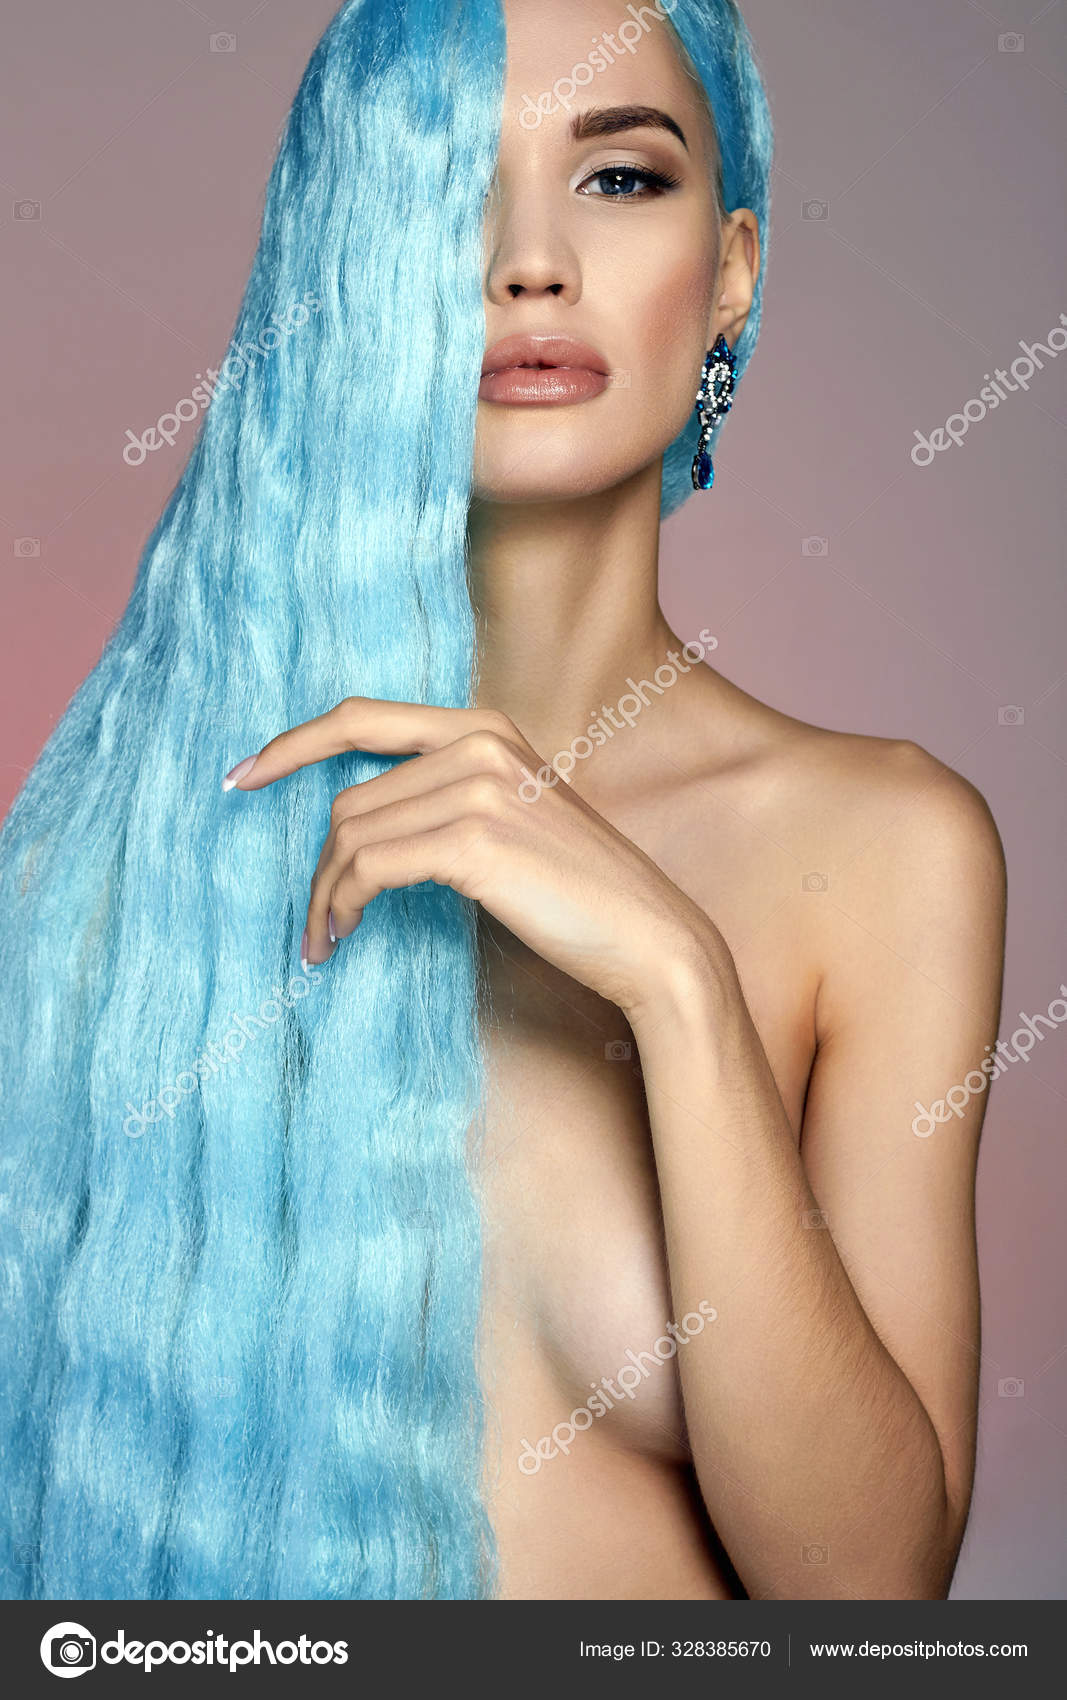 Naked blue hair